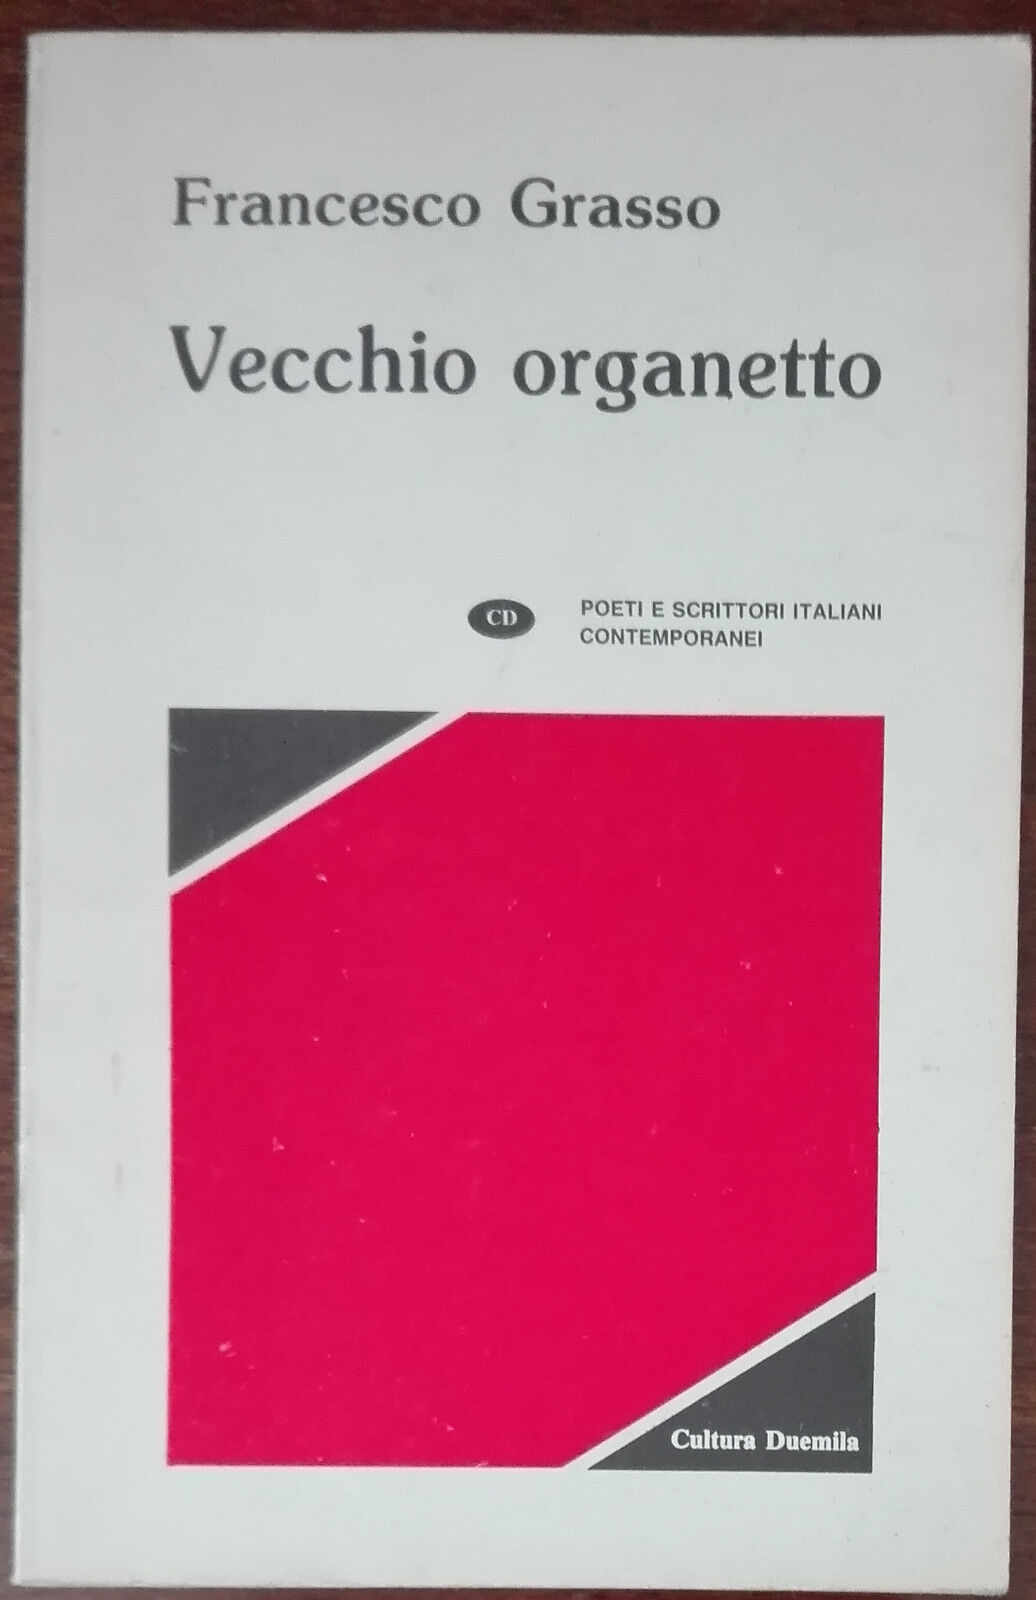 Vecchio organetto - Francesco Grasso - Cultura duemila,1994 - A